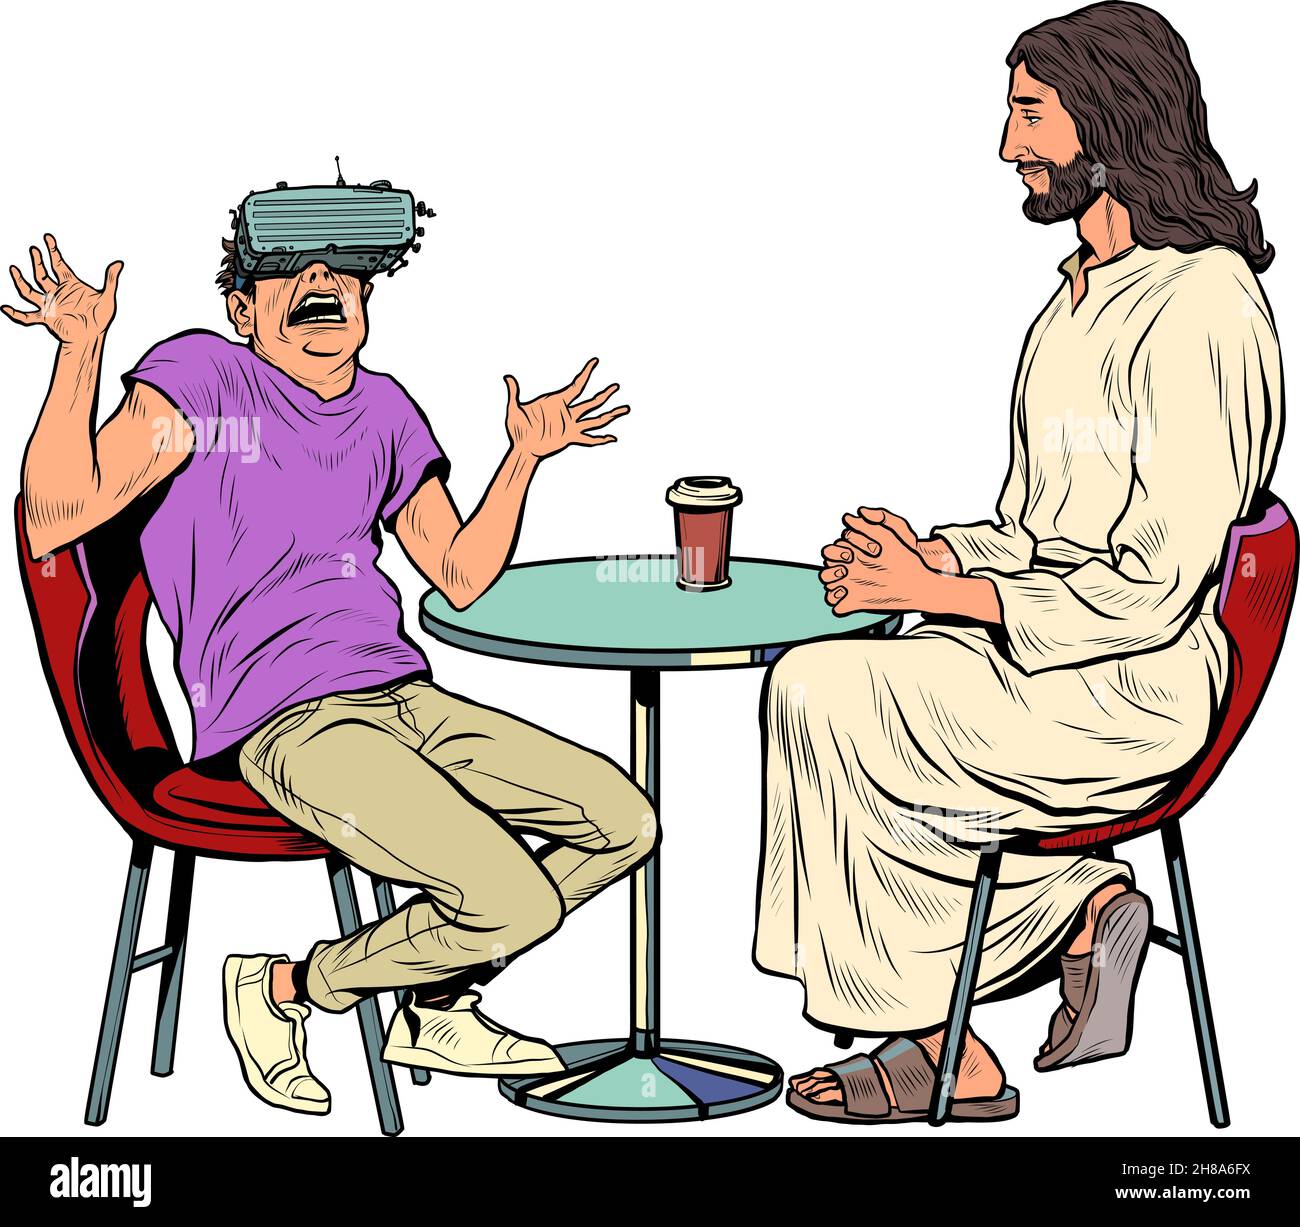 Un jeune homme en lunettes de réalité virtuelle et Jésus à côté de lui.Religion et vie virtuelle Illustration de Vecteur